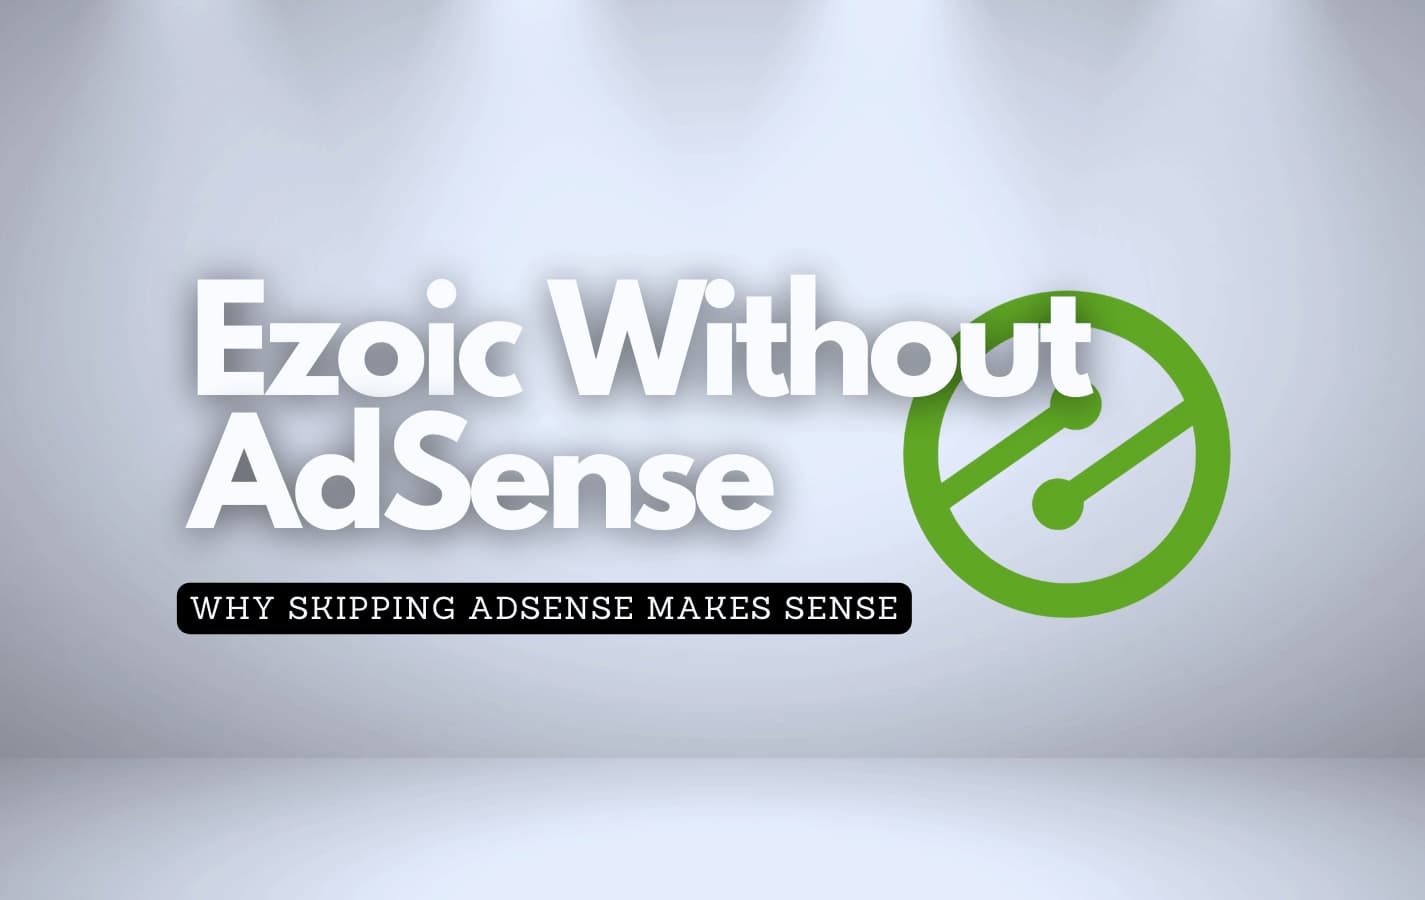 Ezoic logo against a white background with the text asking if Ezoic without AdSense makes sense